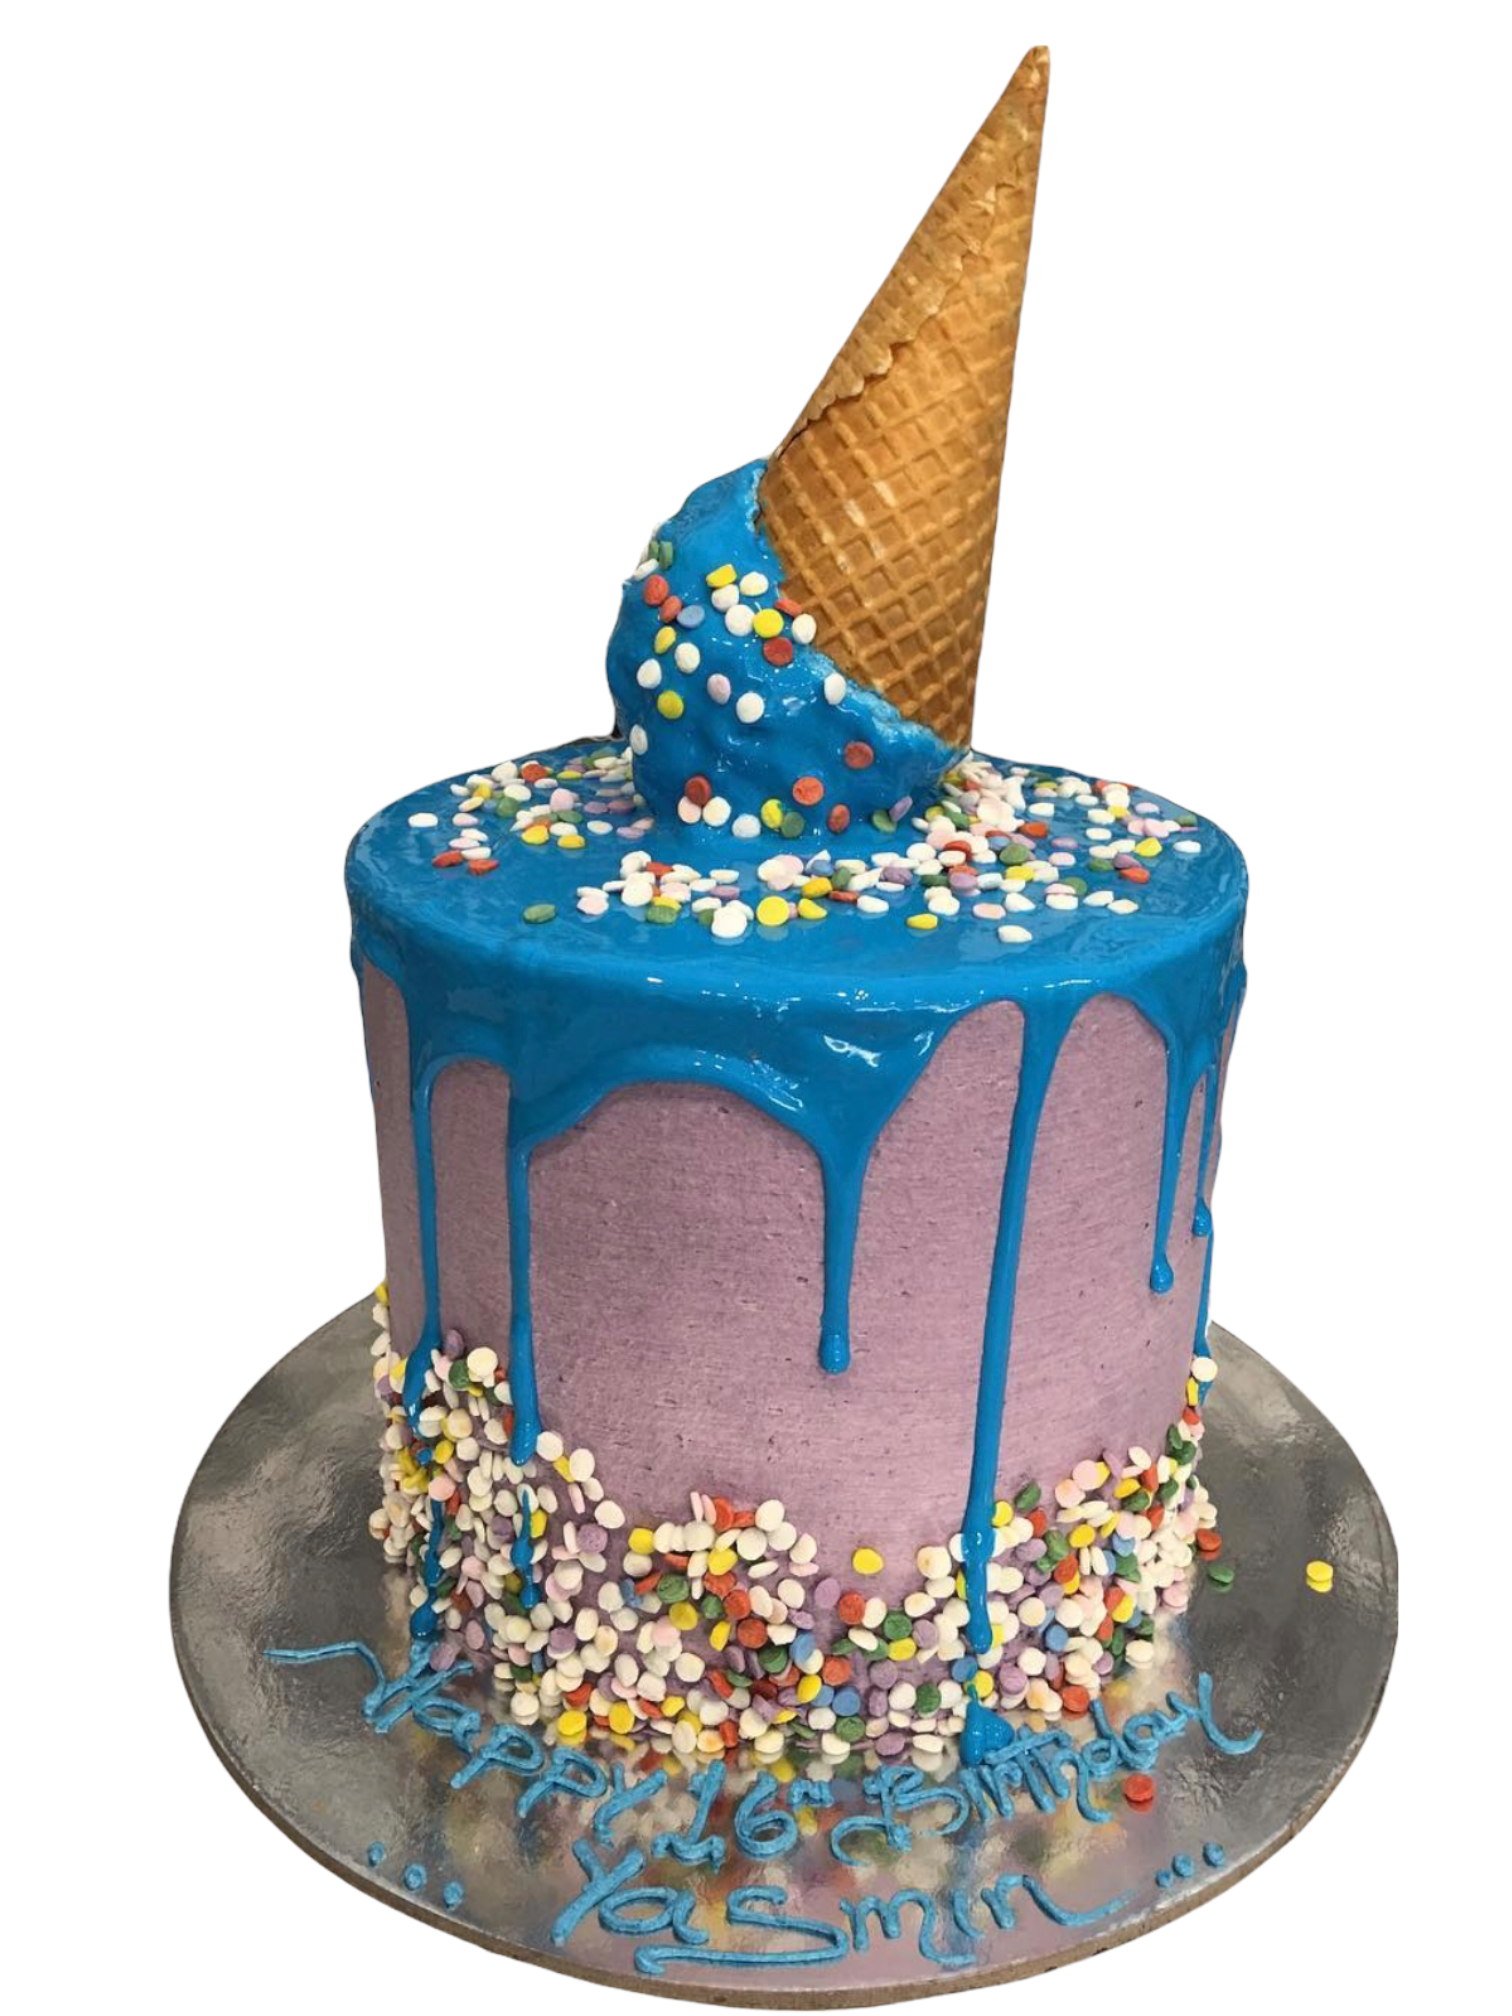 custom birthday cake with six icecream cones